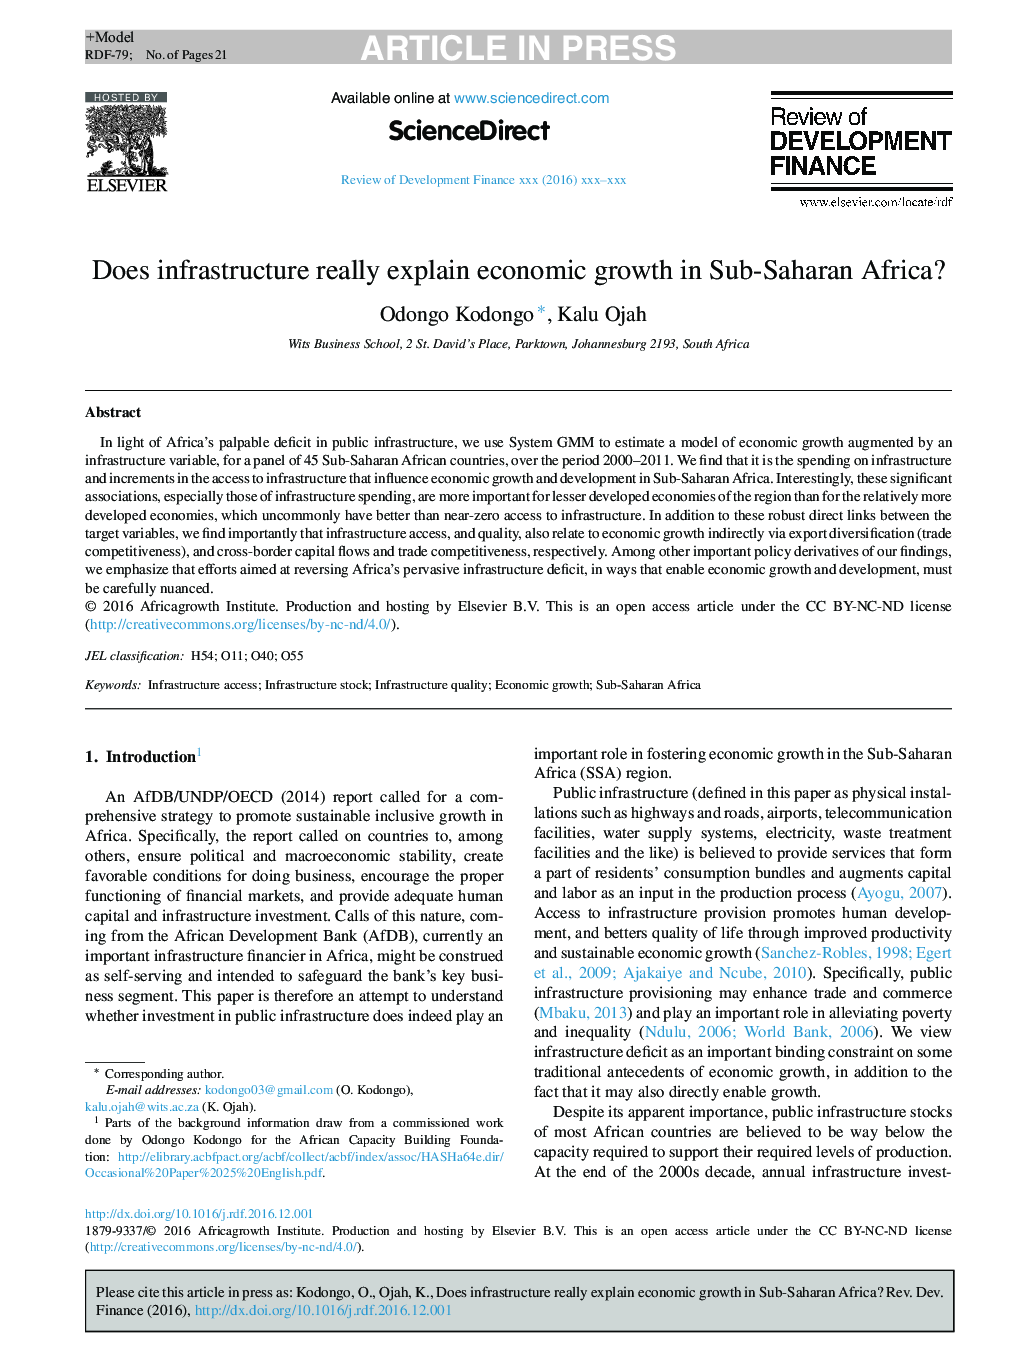 آیا زیرساخت واقعا رشد اقتصادی در کشورهای جنوب صحرای آفریقا را توضیح می دهد؟ 